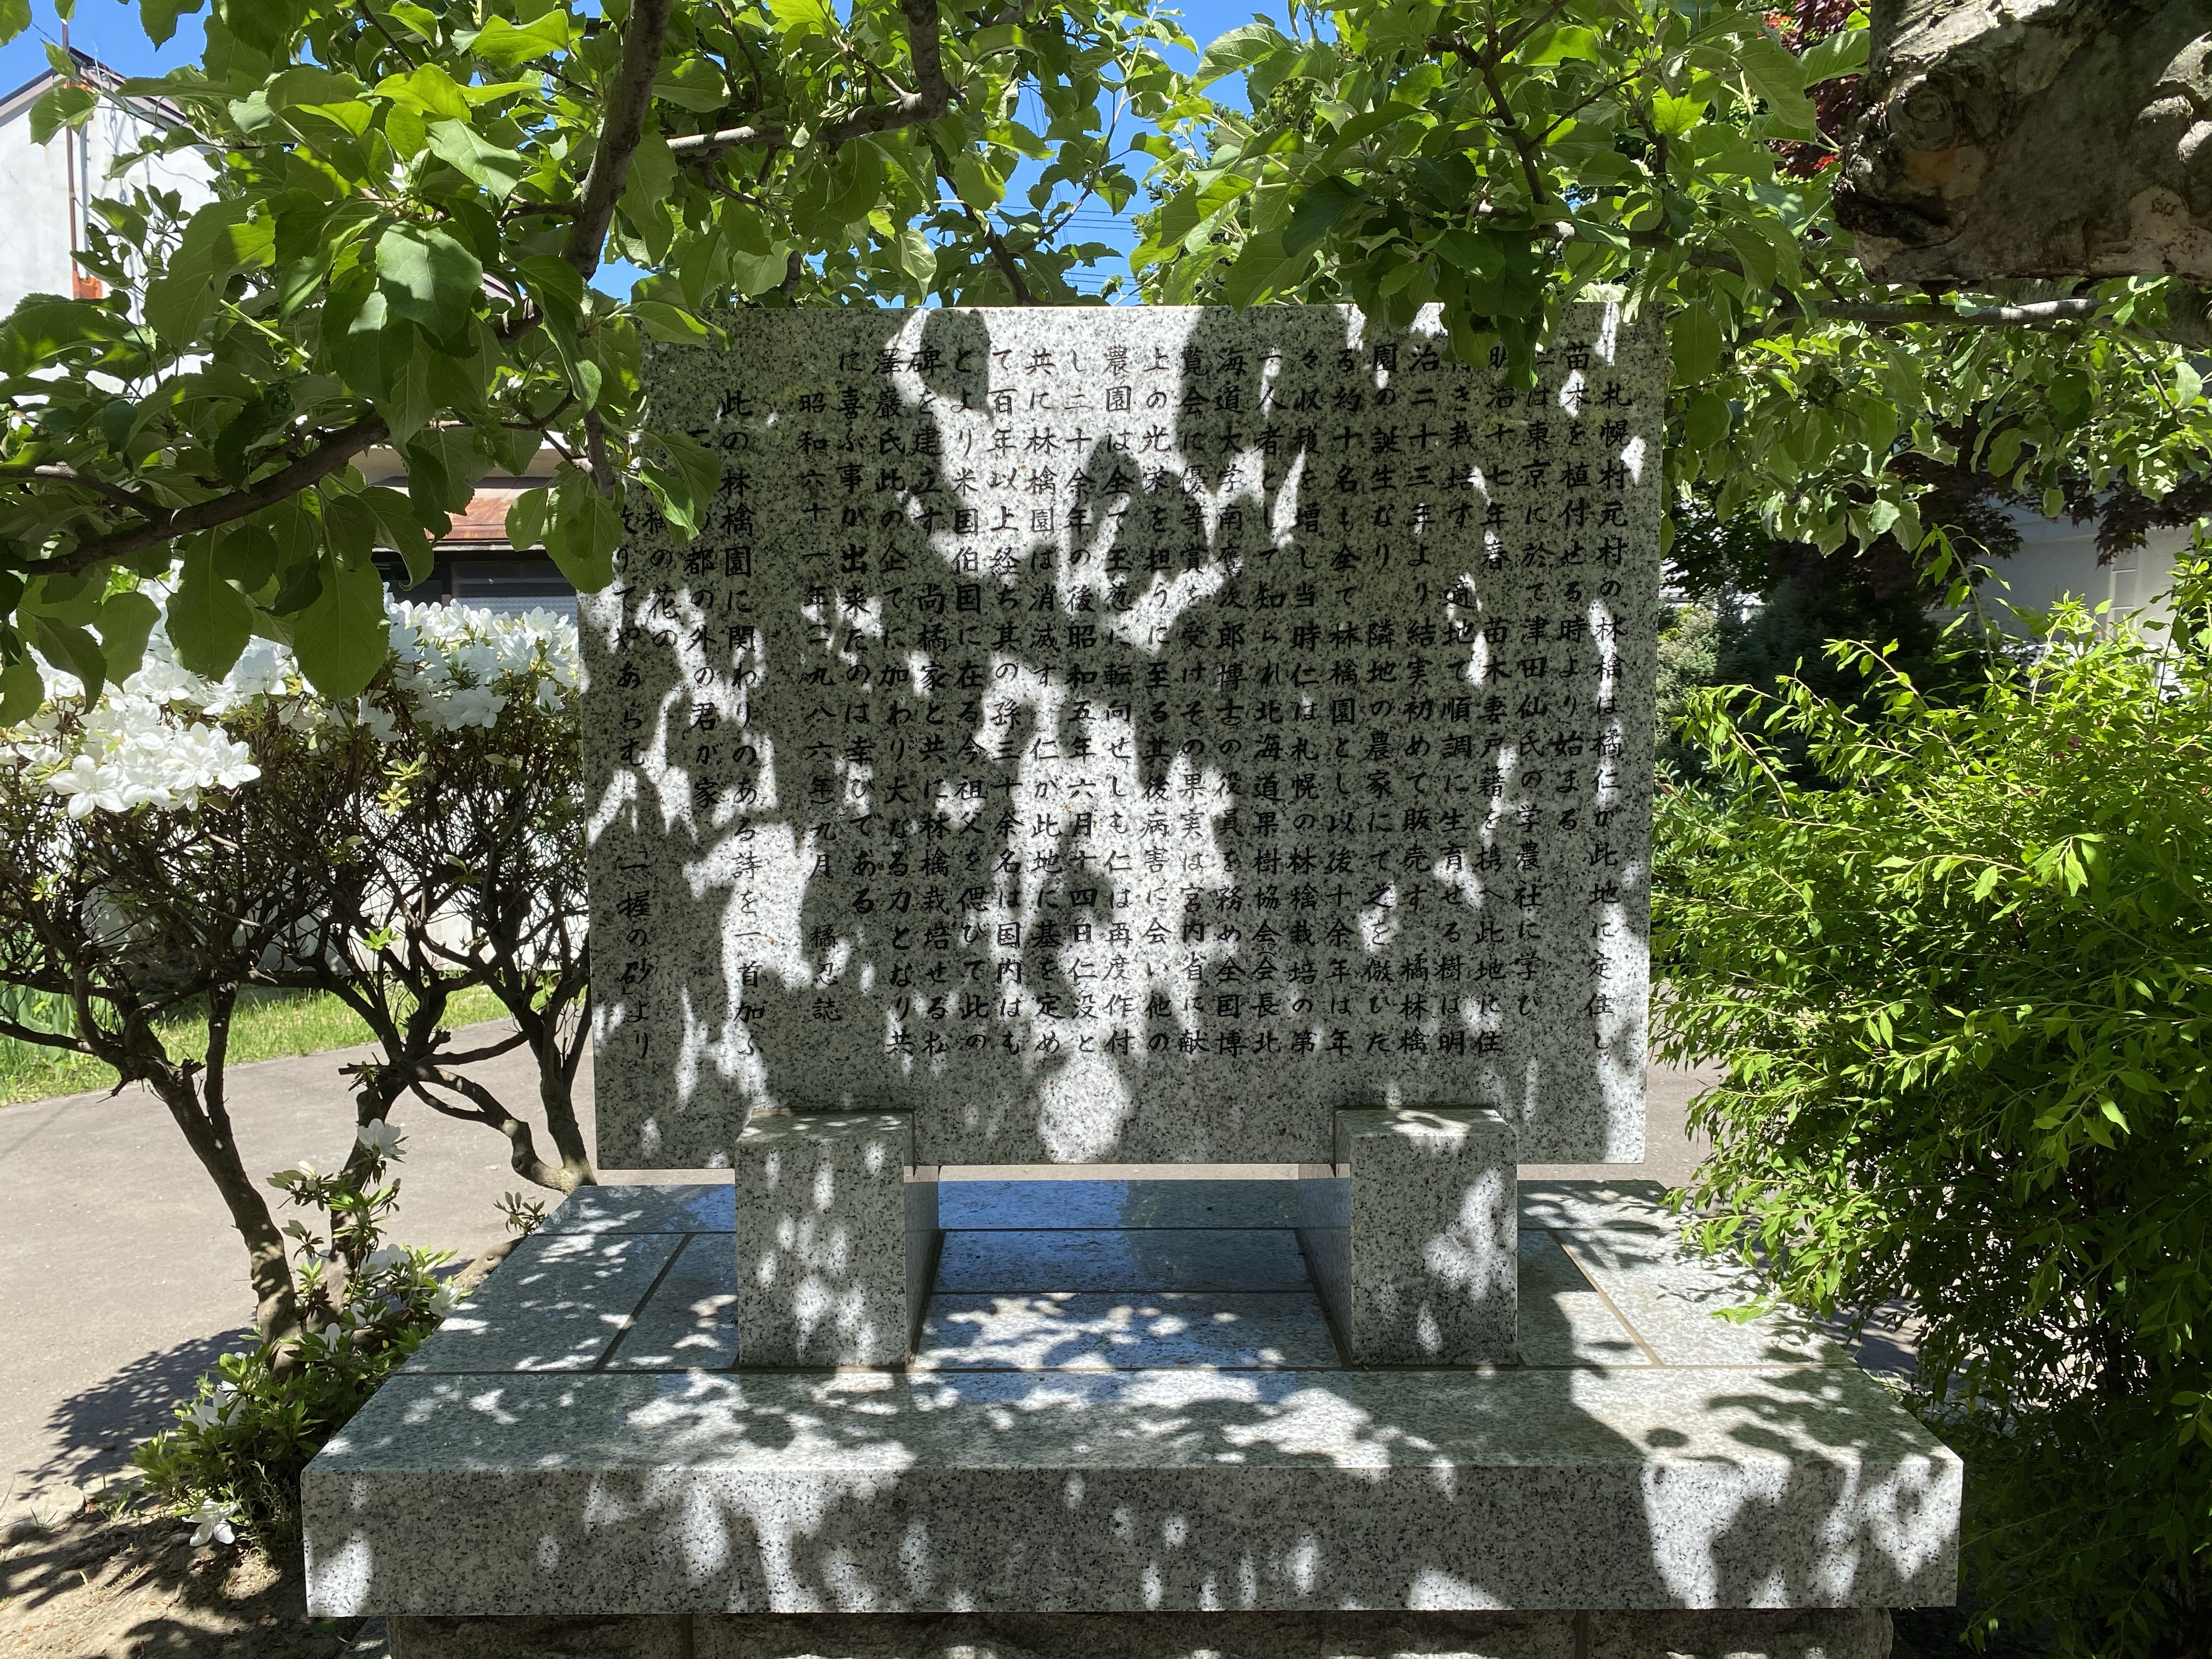 碑の裏面には詳しい由来と一緒に、石川啄木の歌が刻まれている